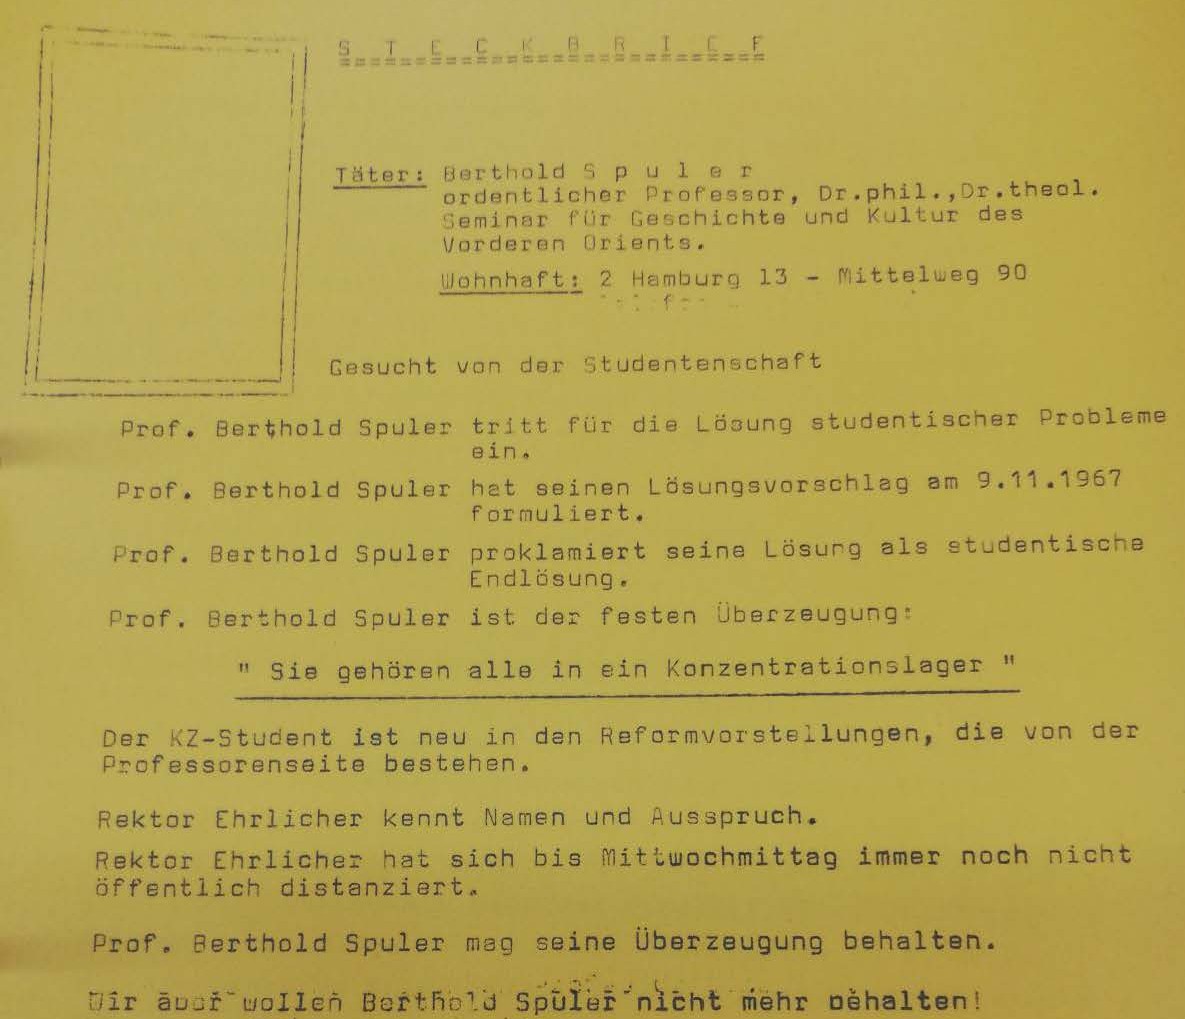 11.1967 AStA-Vorsitz Steckbrief „Gesucht von der Studentenschaft“